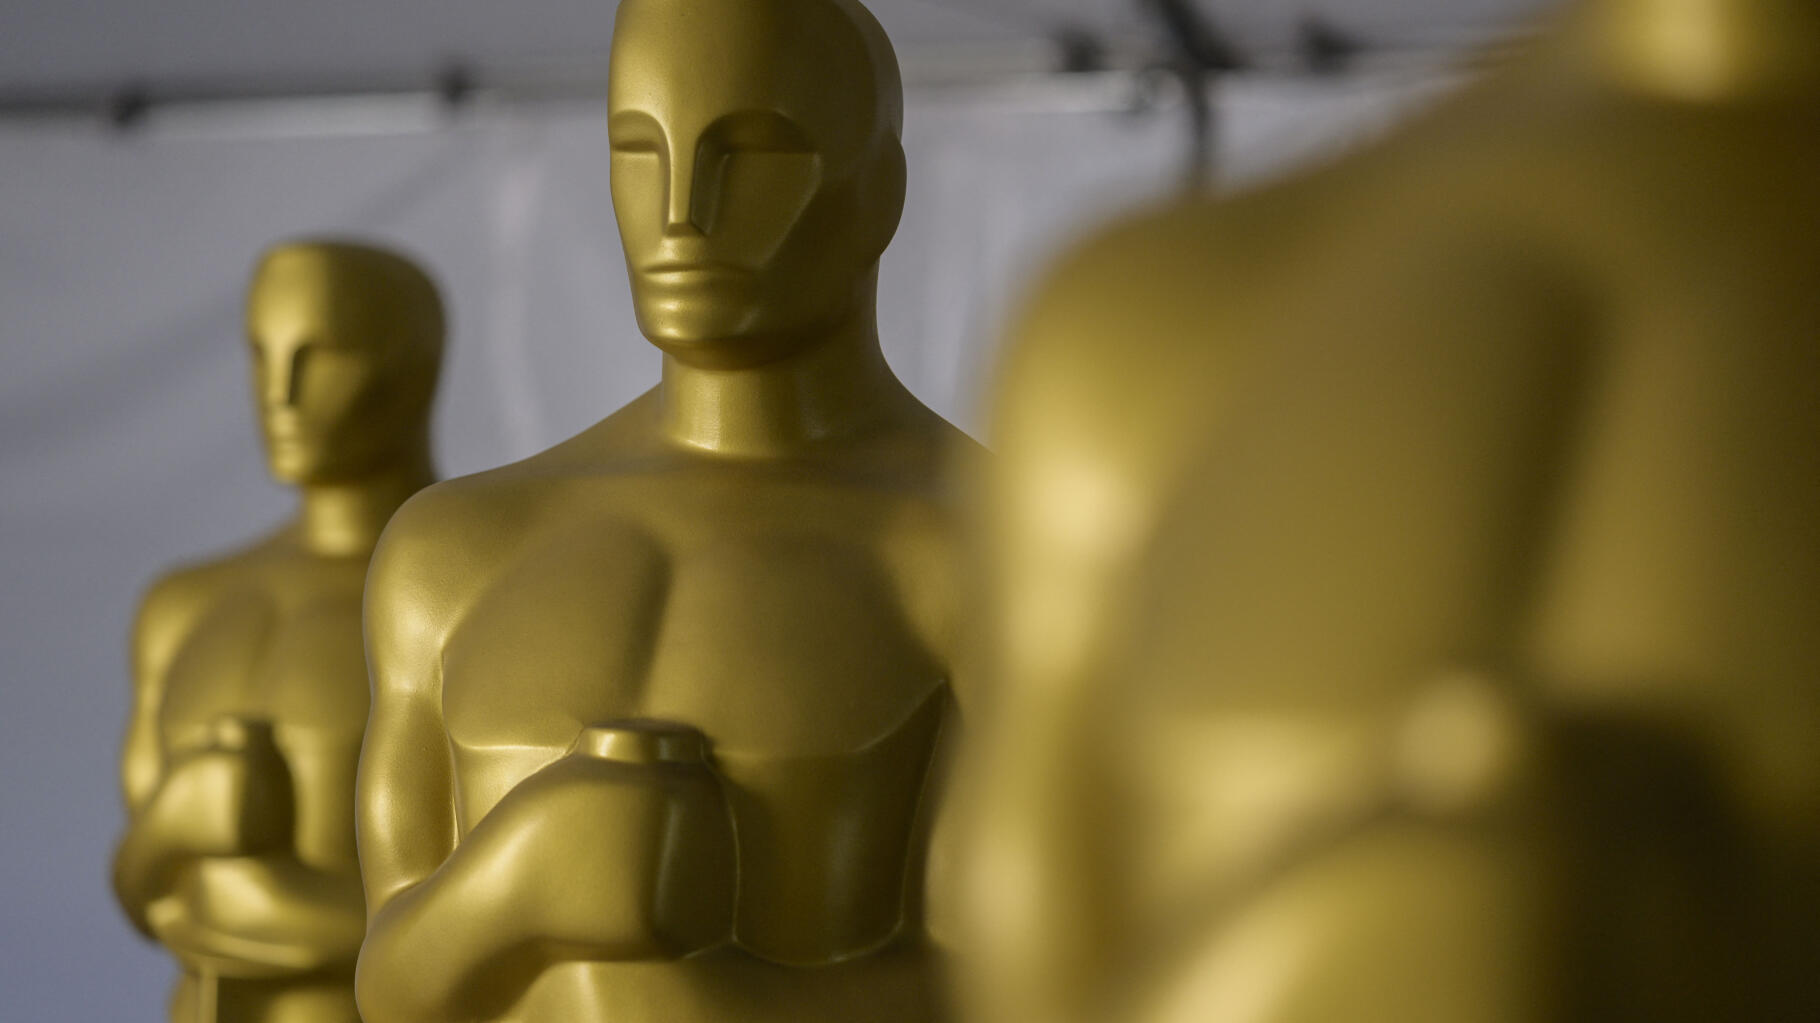 Ce n’est pas la Palme d’or qui représentera la France aux Oscars